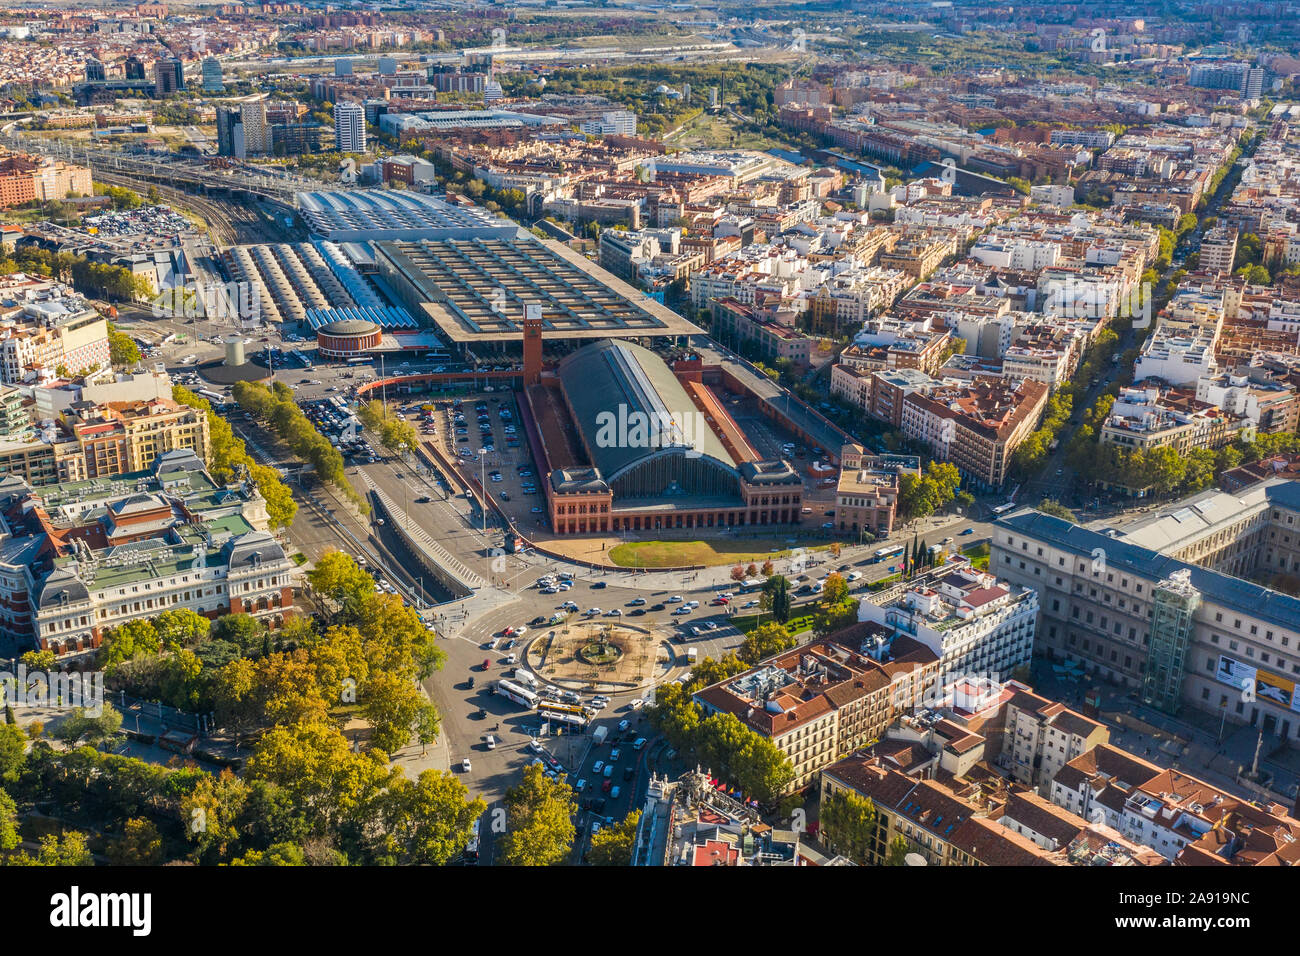 Madrid-Puerta de Atocha, De Bahnhof Atocha, Madrid, Spanien Stockfoto